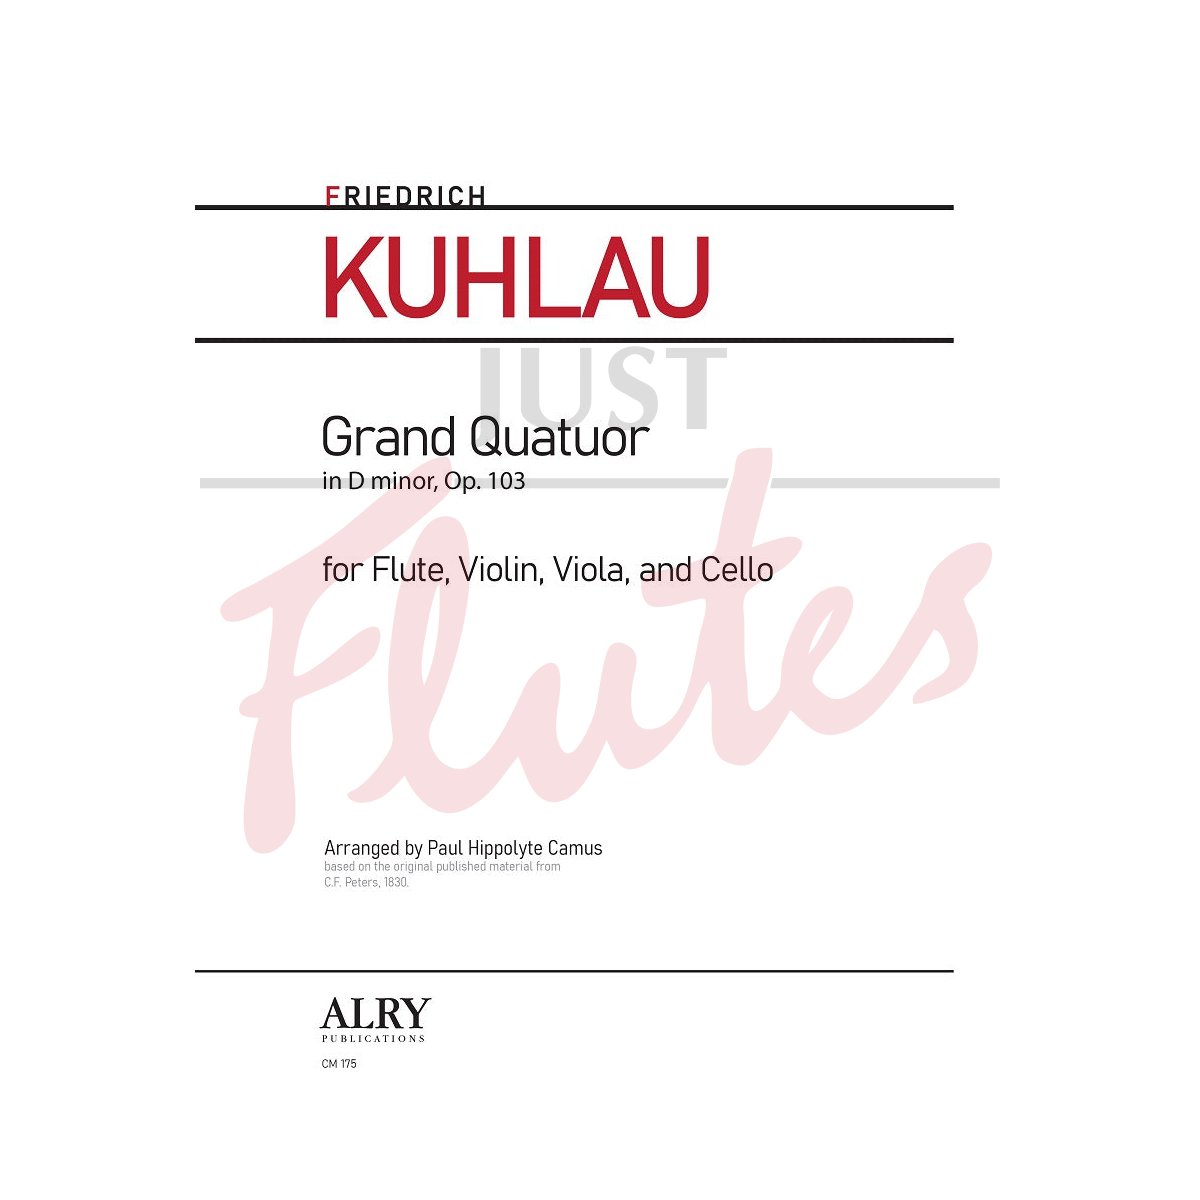 Grand Quatuor in D minor arranged for for Flute, Violin, Viola and Cello